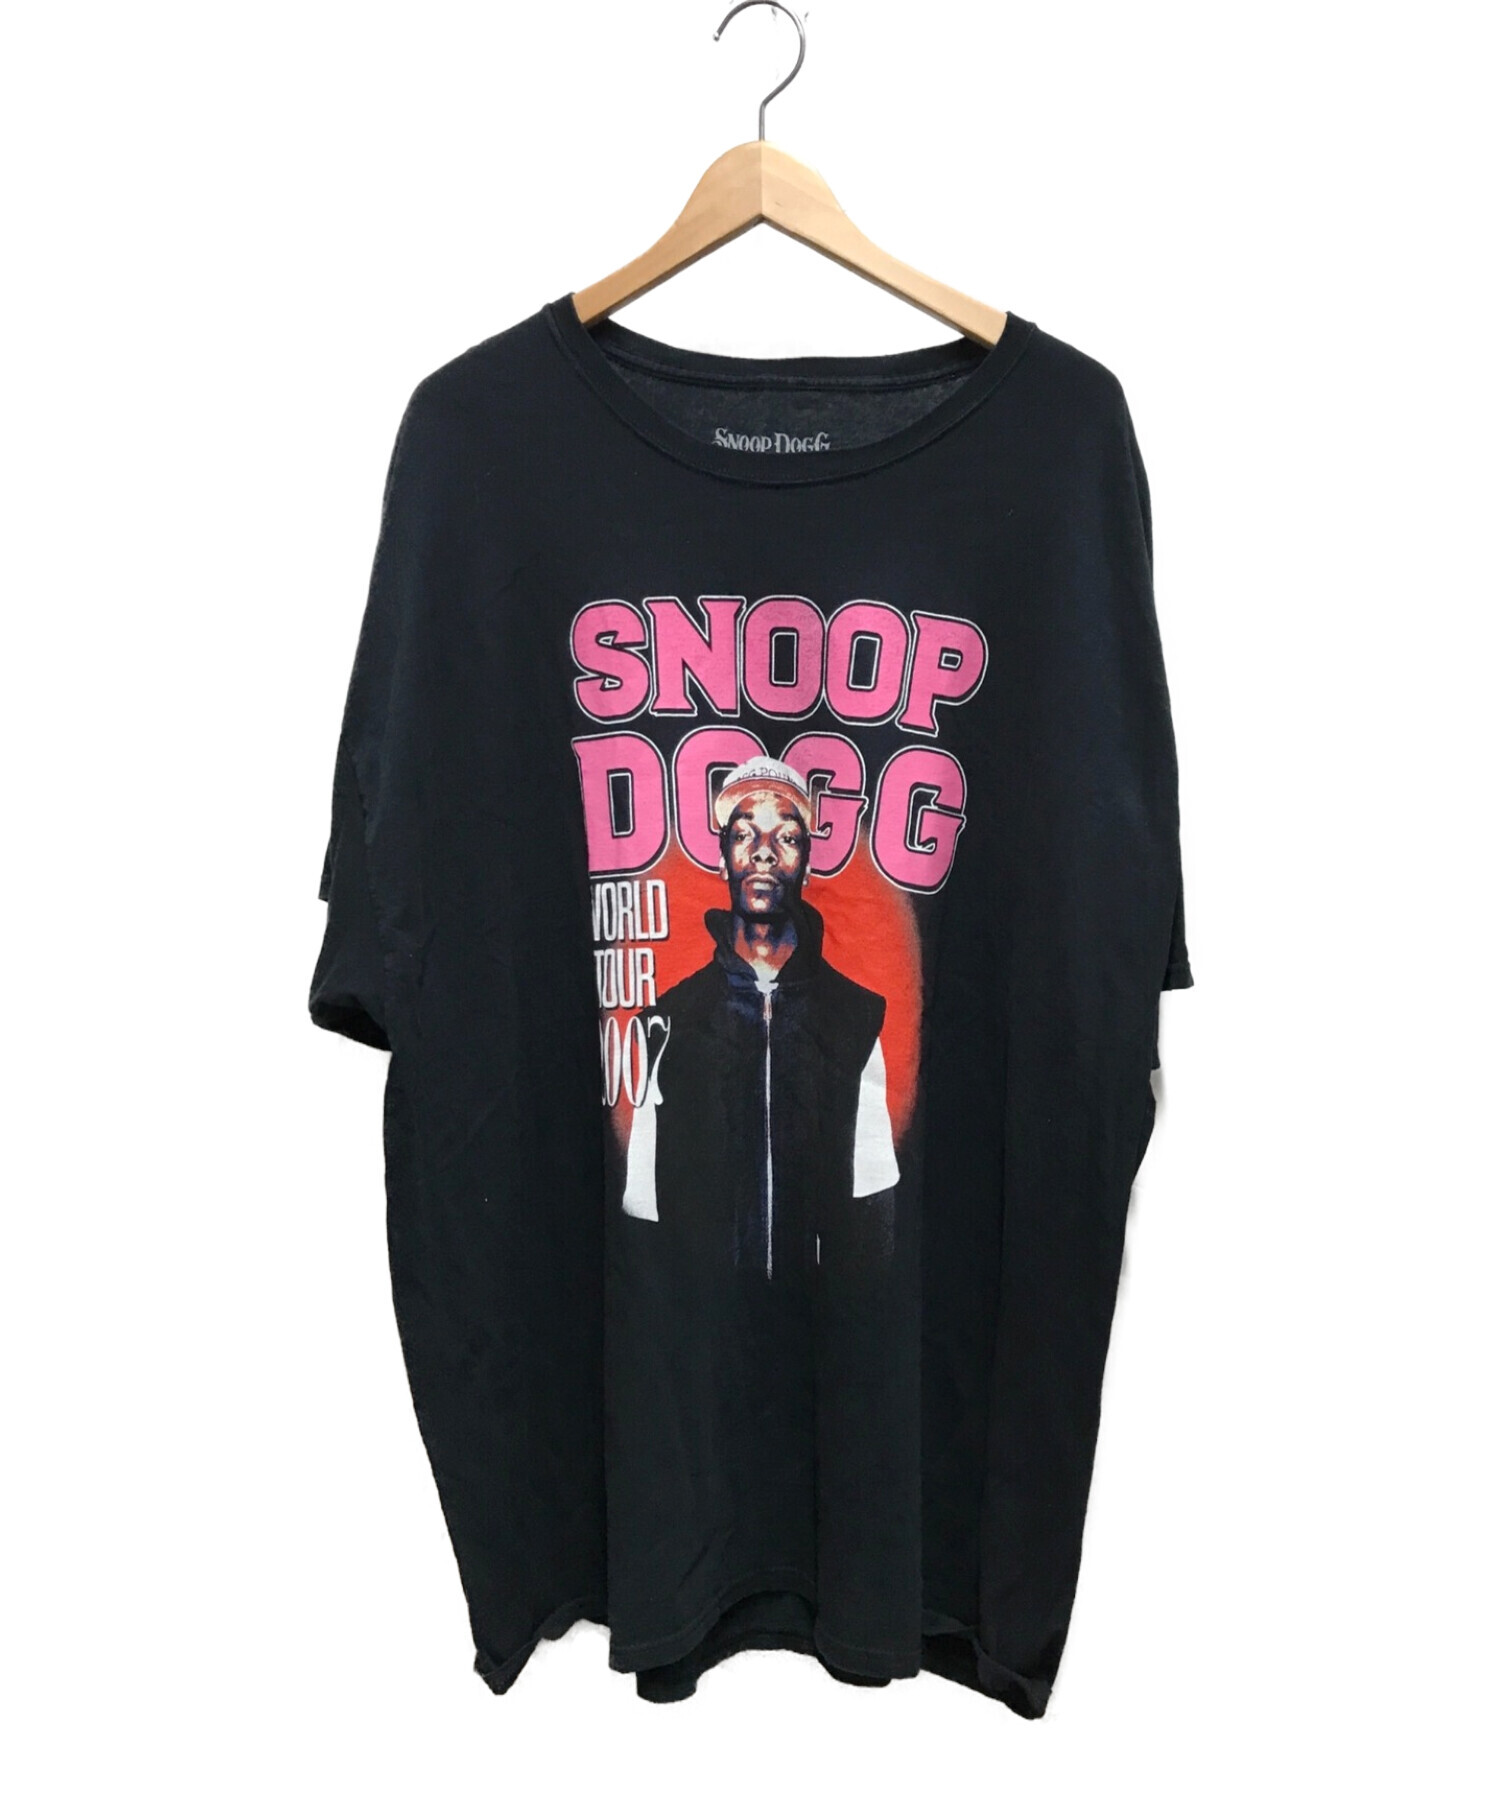 SNOOP DOGG (スヌープドッグ) アーティストツアーTシャツ ブラック サイズ:XL